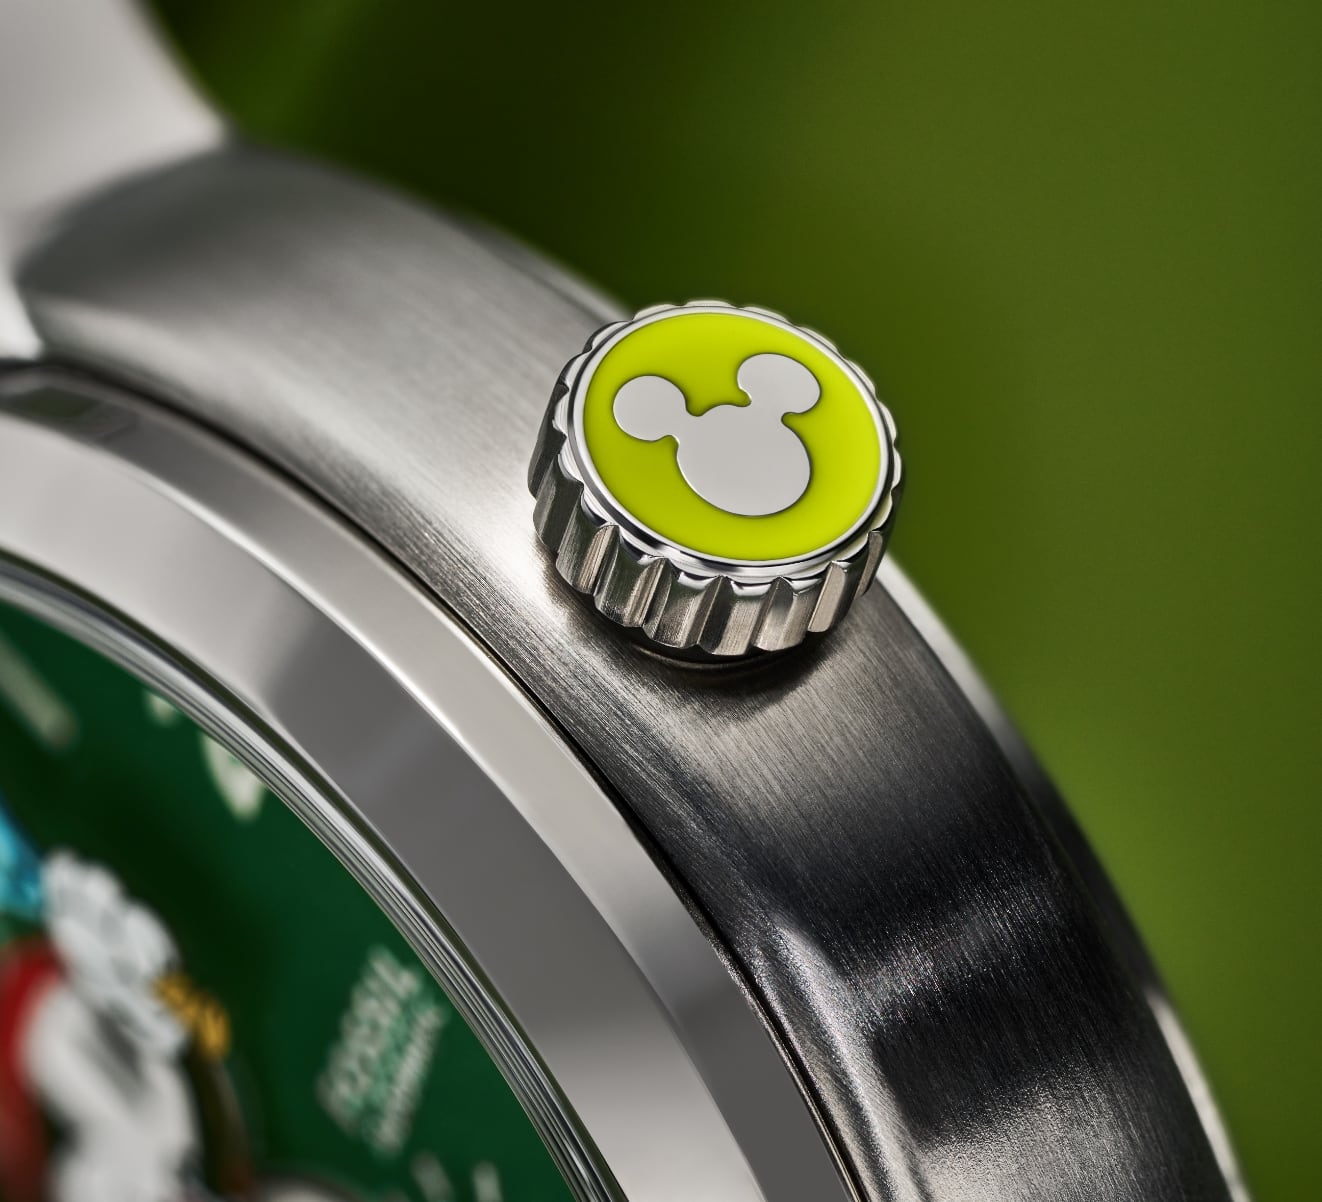 Un GIF de deux images montrant le dos et la couronne personnalisés de la montre, tous deux caractérisés par une silhouette de Mickey Mouse de Disney inspirée par les balles de tennis.